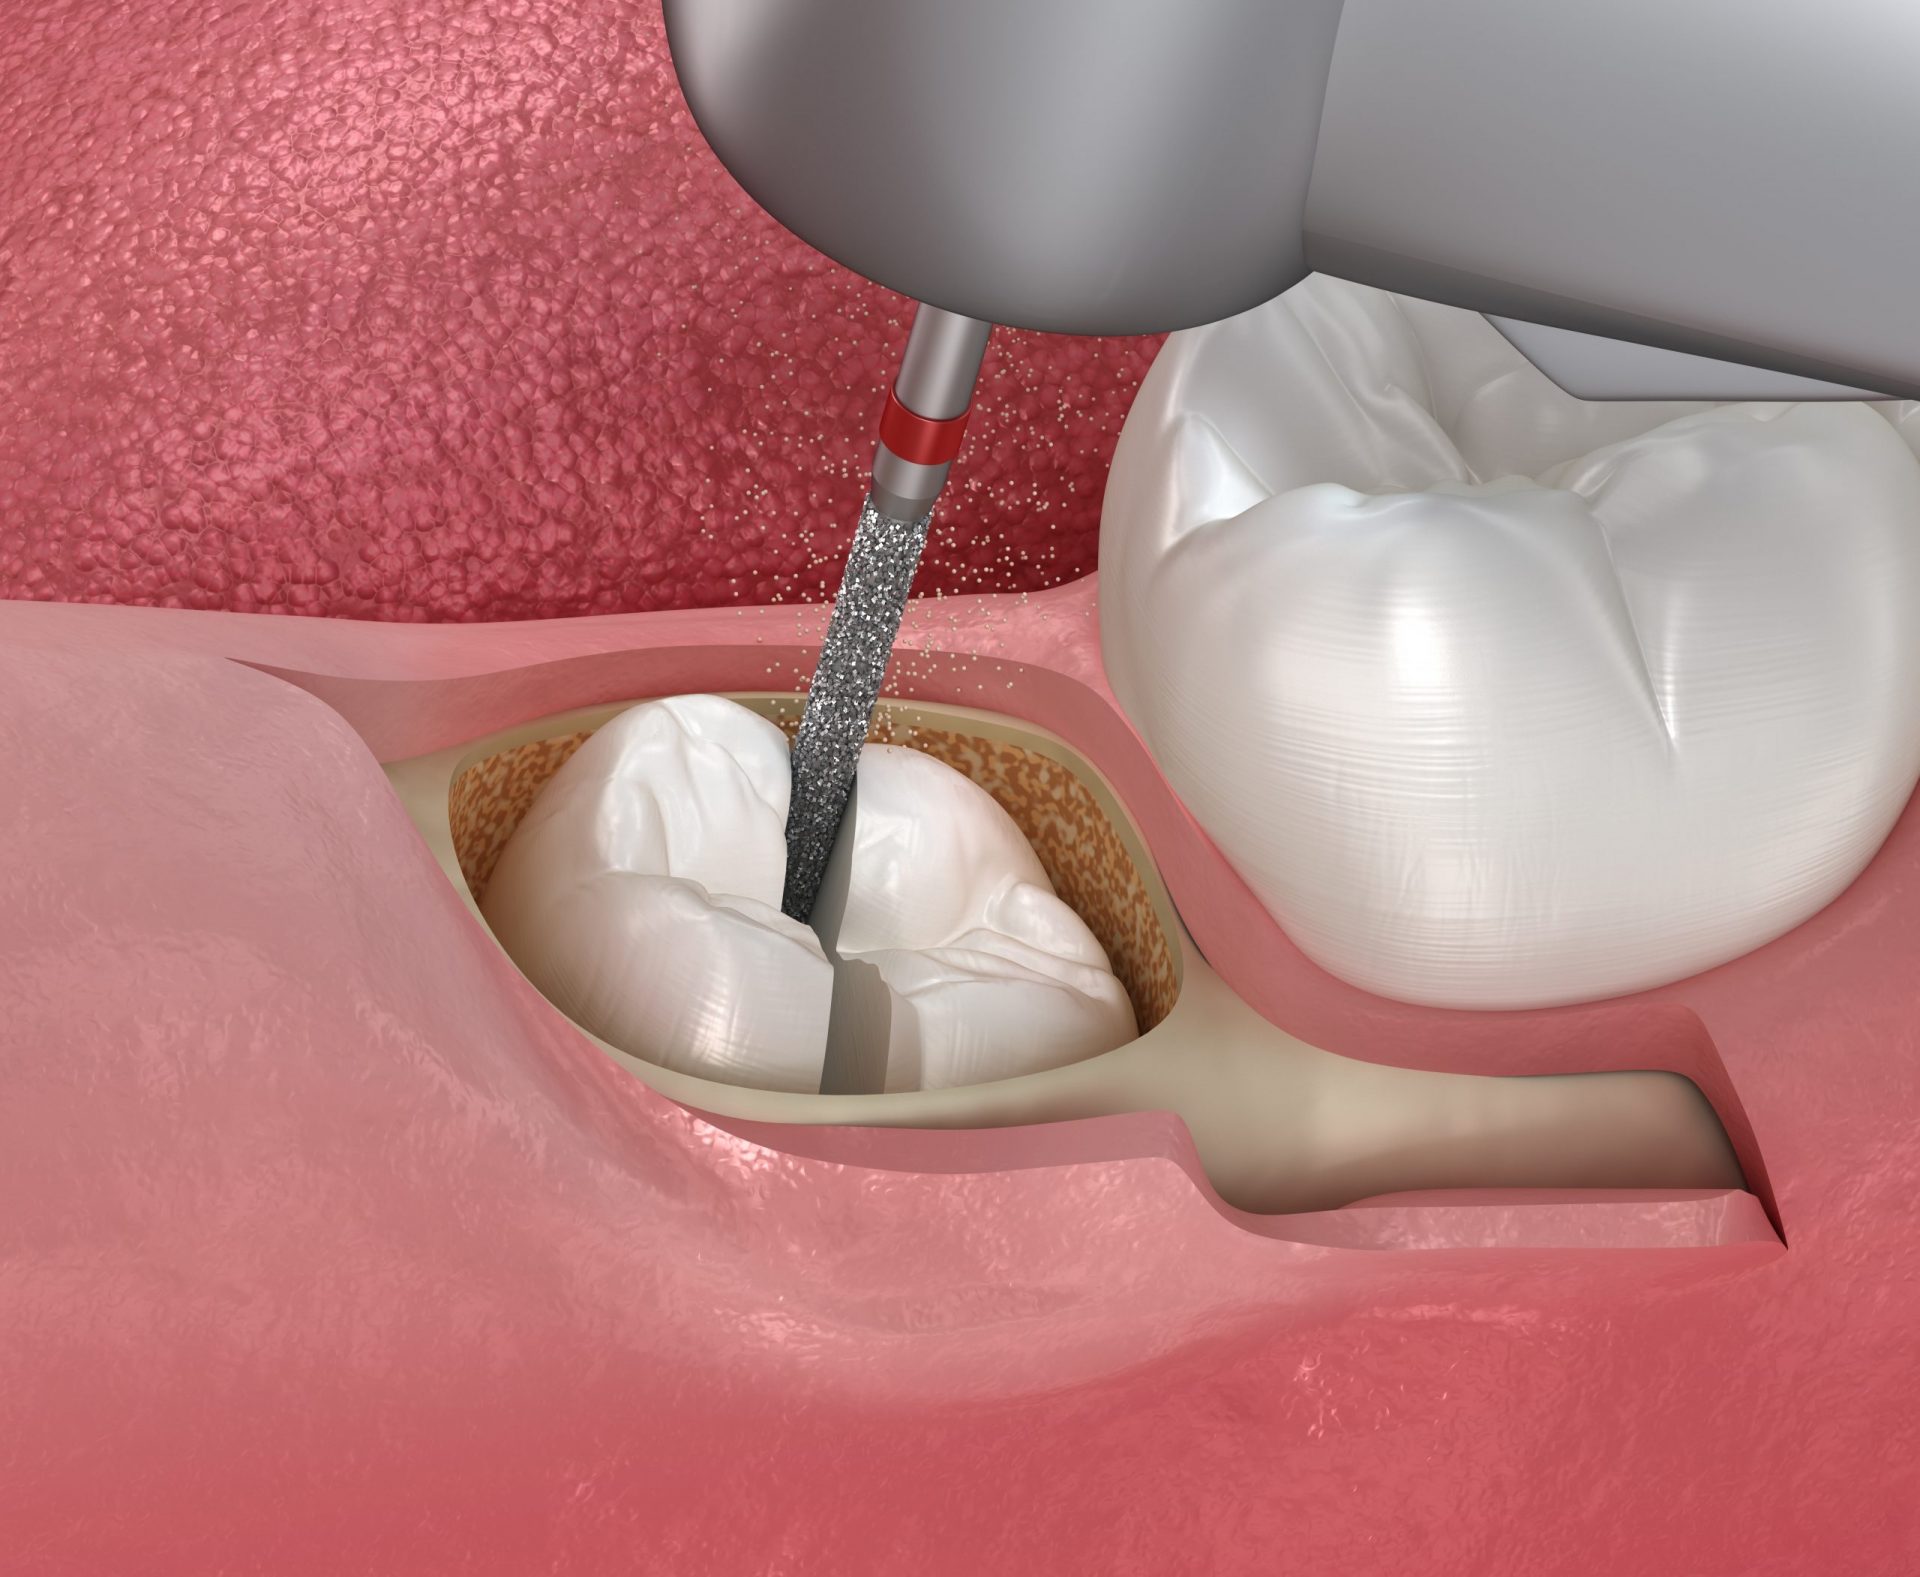 Hình ảnh bác sĩ đang tiểu nhẫu nhổ răng khôn mọc ngầm có mở xương, dùng máy khoan nha khoa để khoan lấy răng mọc ngầm